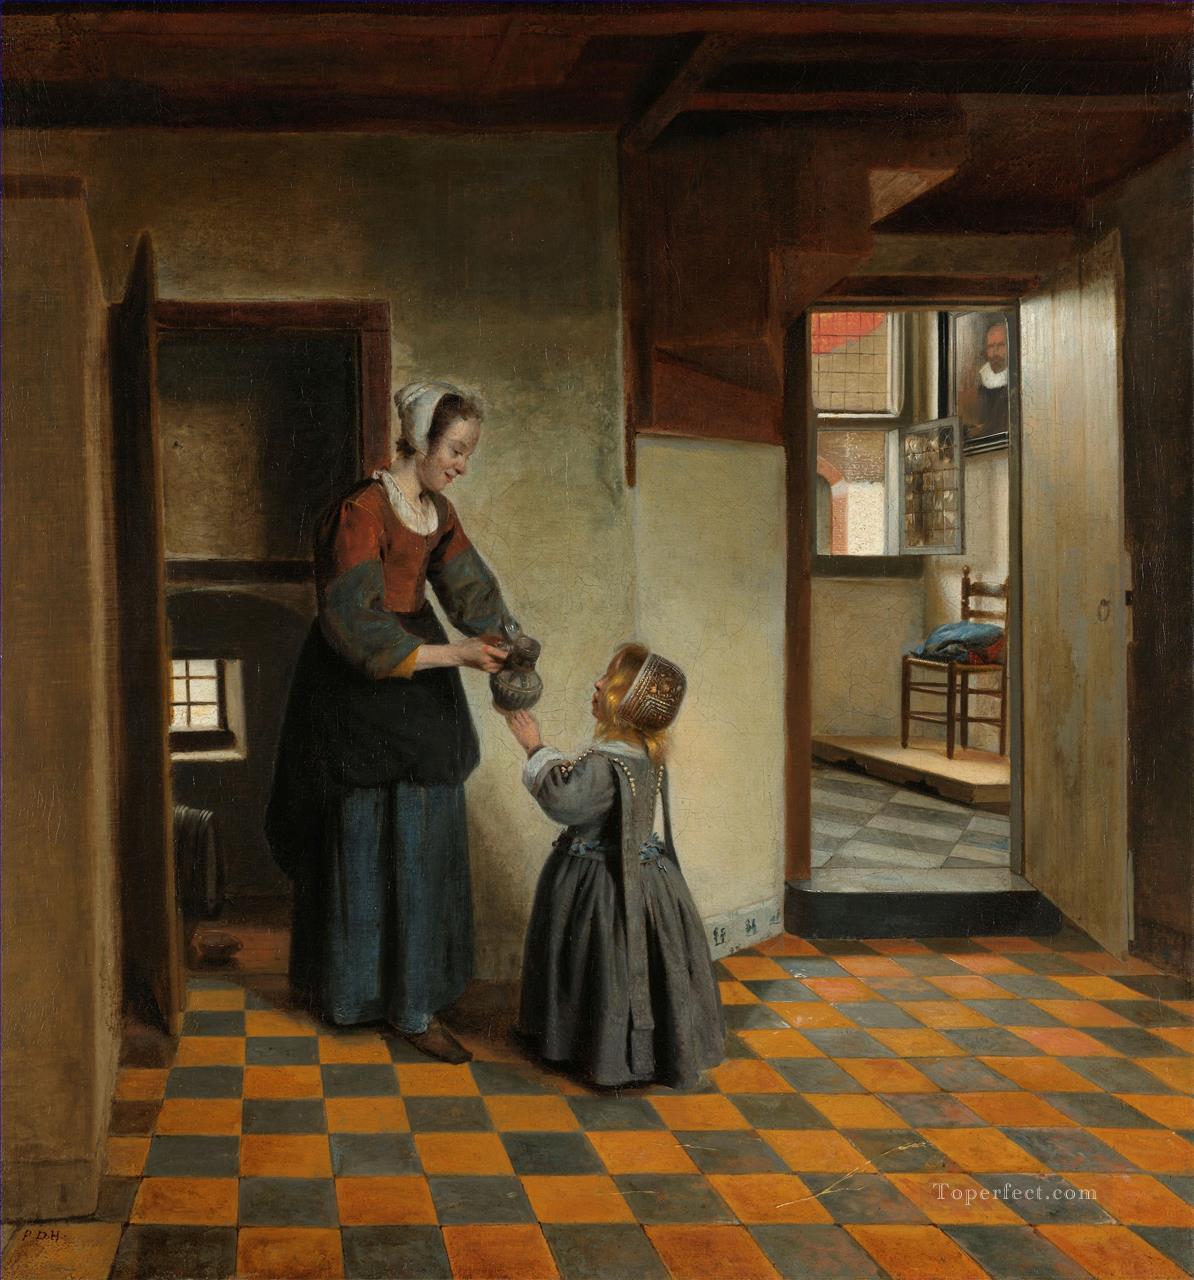 パントリーに子供を持つ女性 ジャンル ピーテル・デ・ホーホ油絵